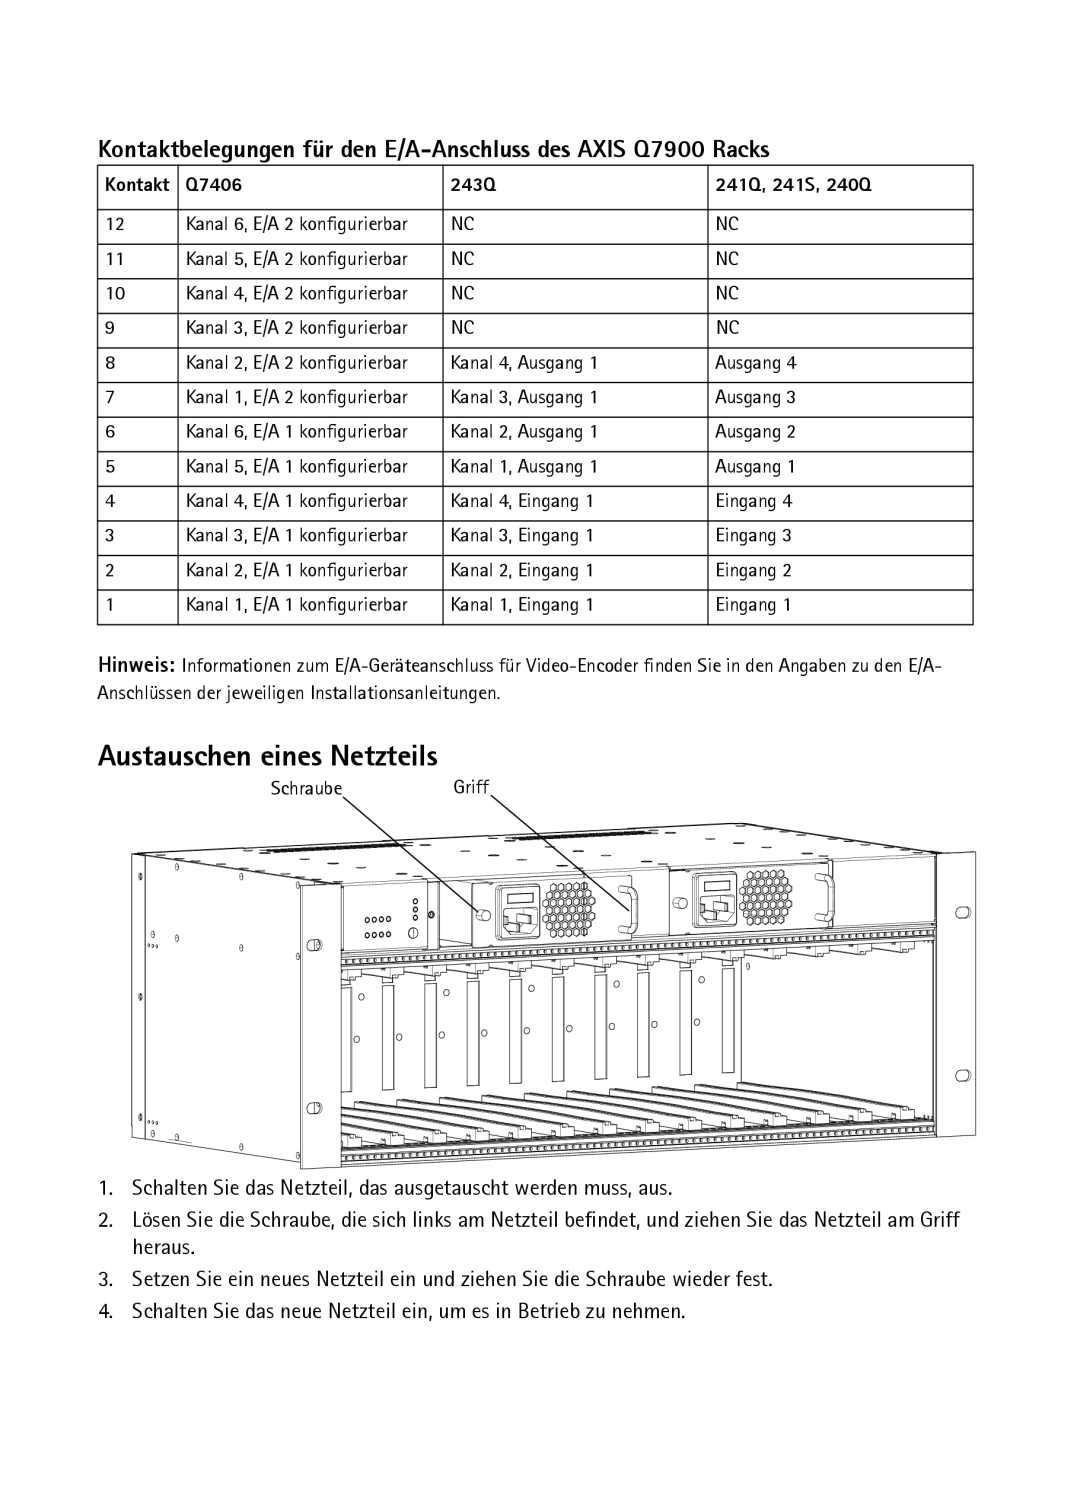 Axis Communications AXIS Q7900 Rack manual Austauschen eines Netzteils 